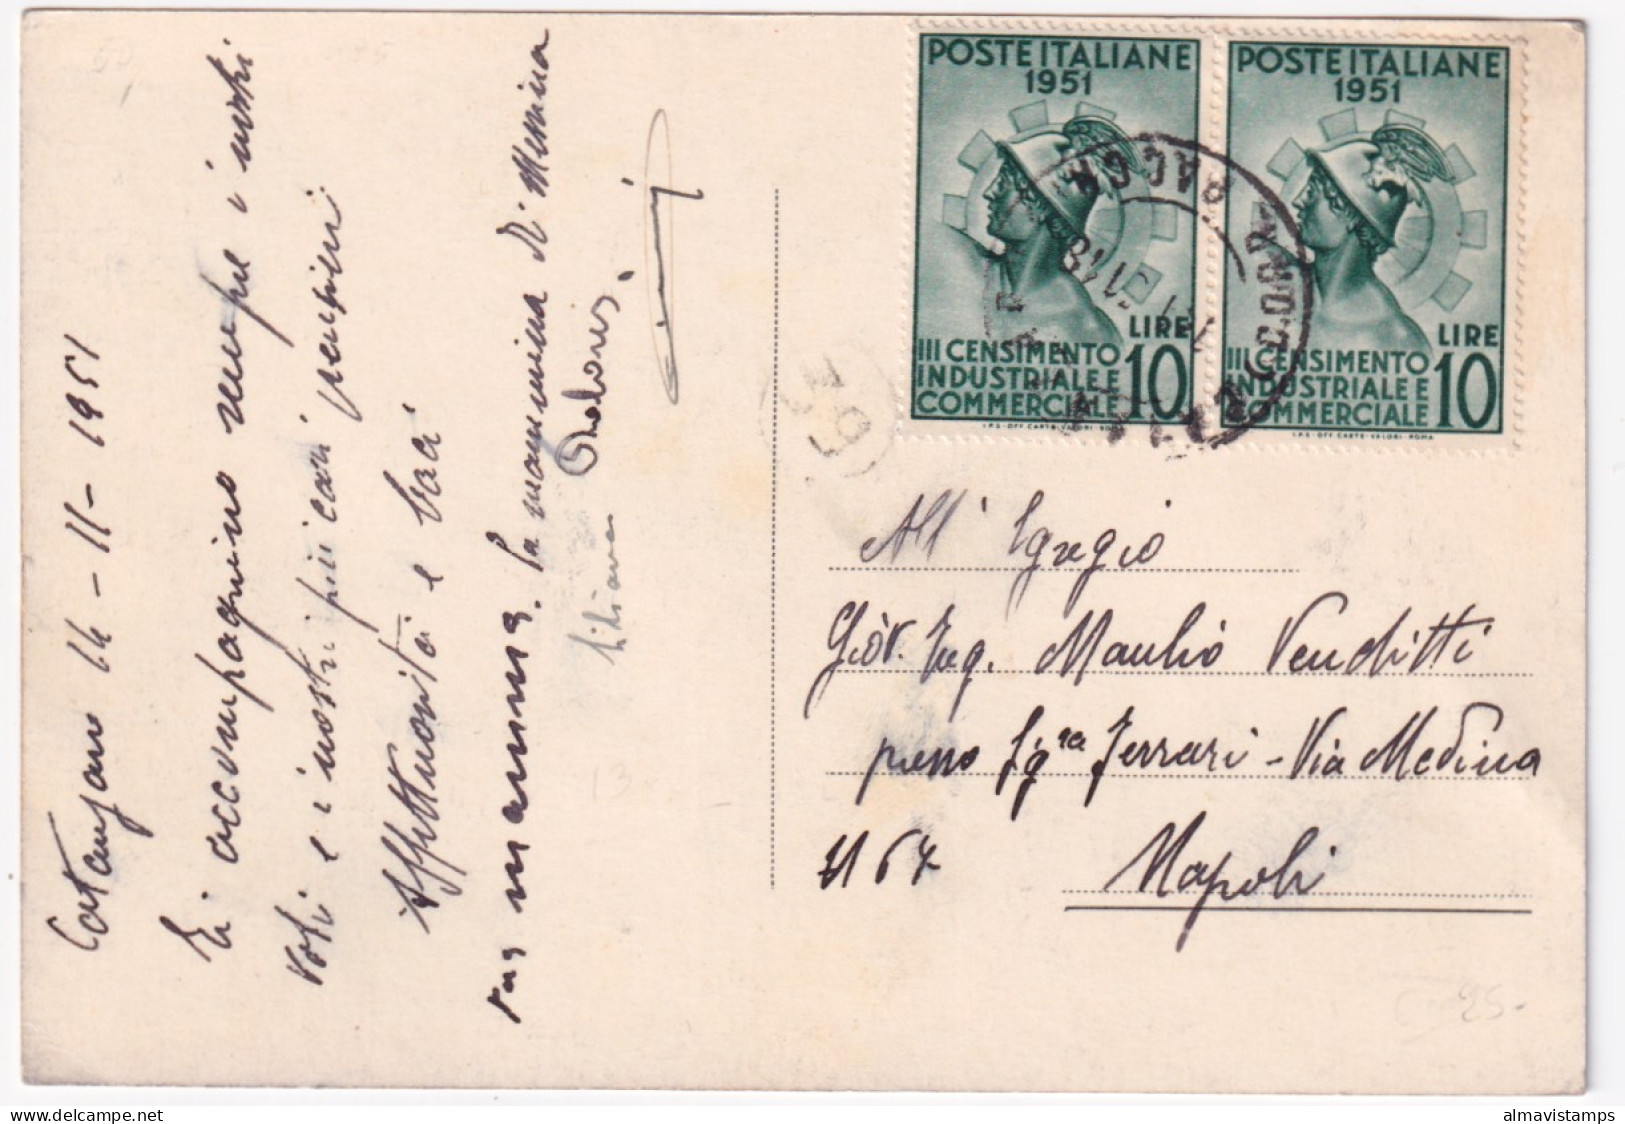 1951-CENSIMENTO INDUSTRIALE COMMERCIALE Coppia Lire 10 (675) Su Cartolina (Catan - Catanzaro